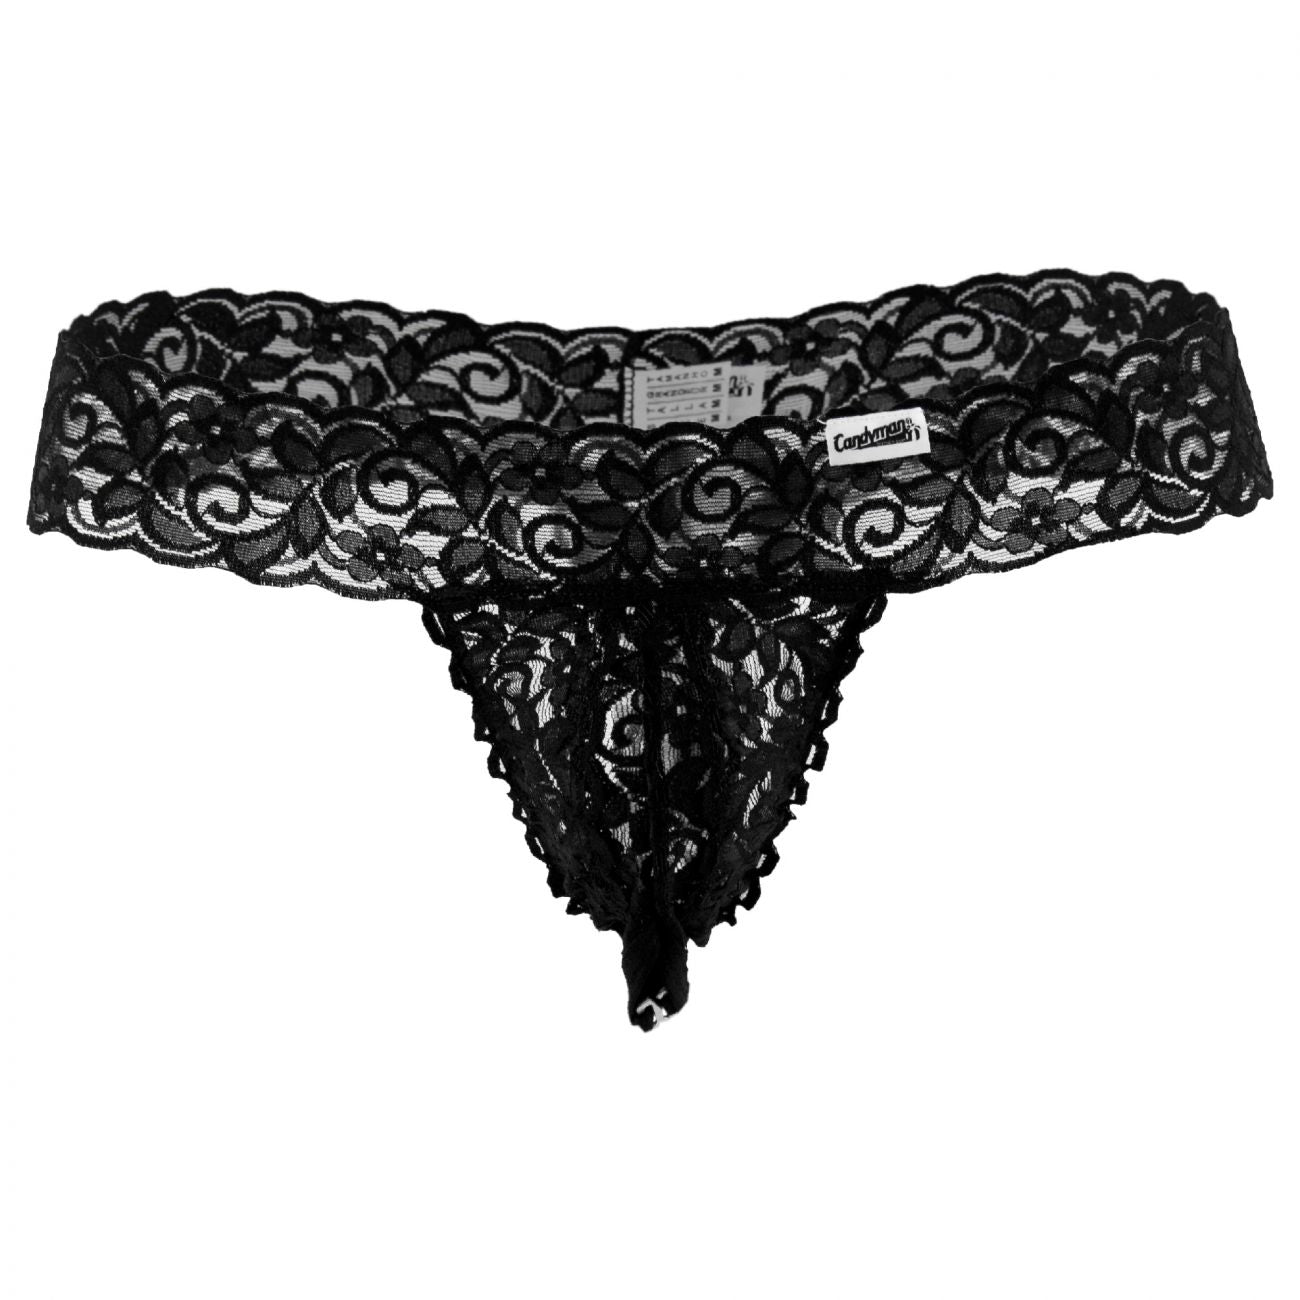 CandyMan 99315X  Peek a Boo Lace Thongs Black Plus Sizes